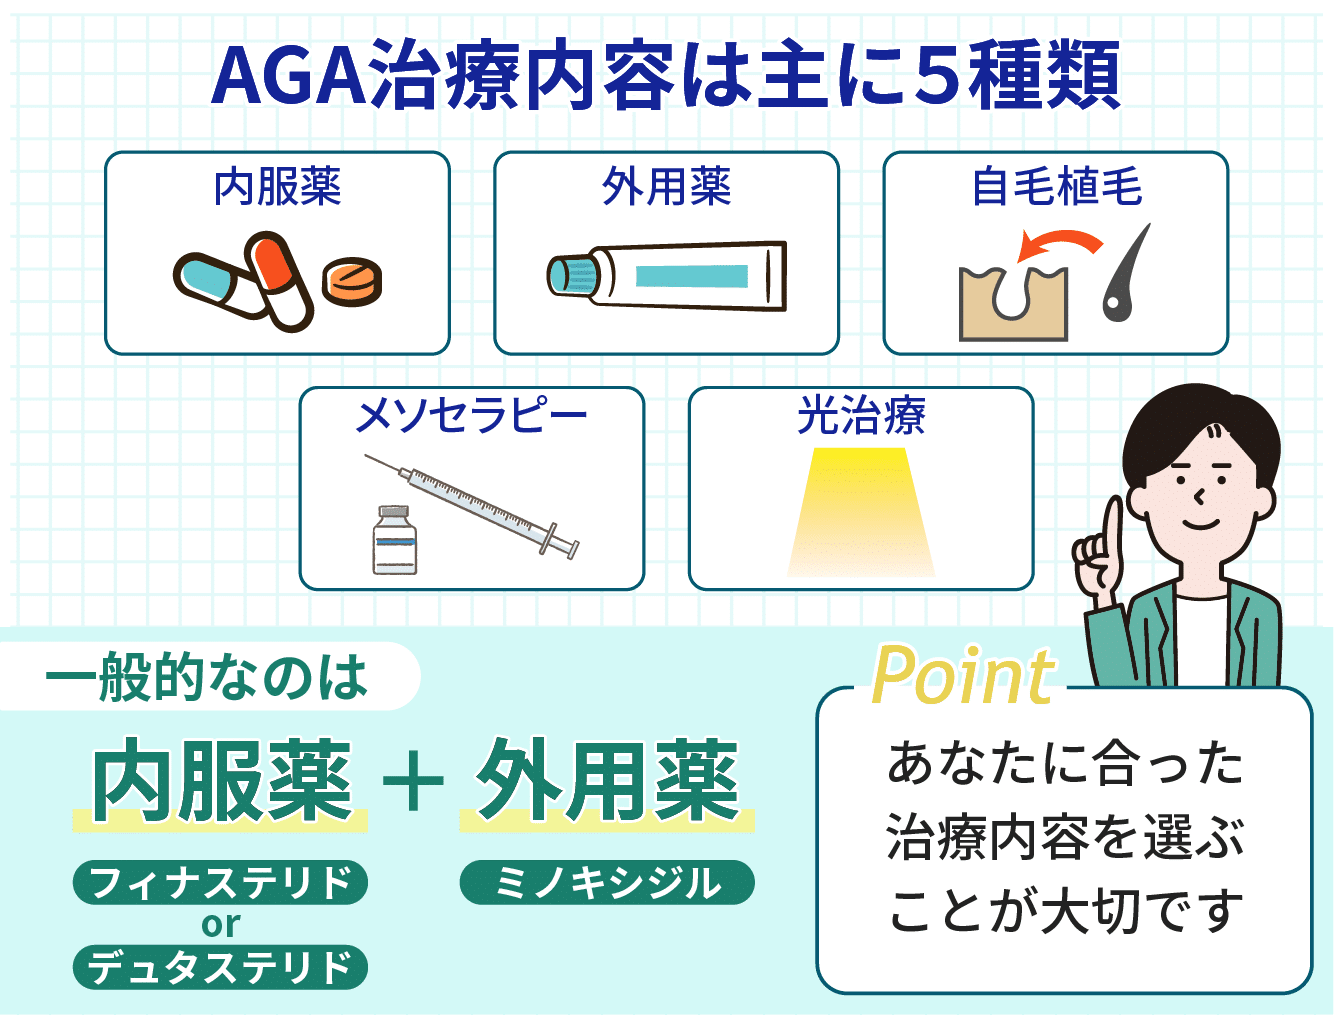 AGA治療の方法は内服薬＋外用薬が一般的